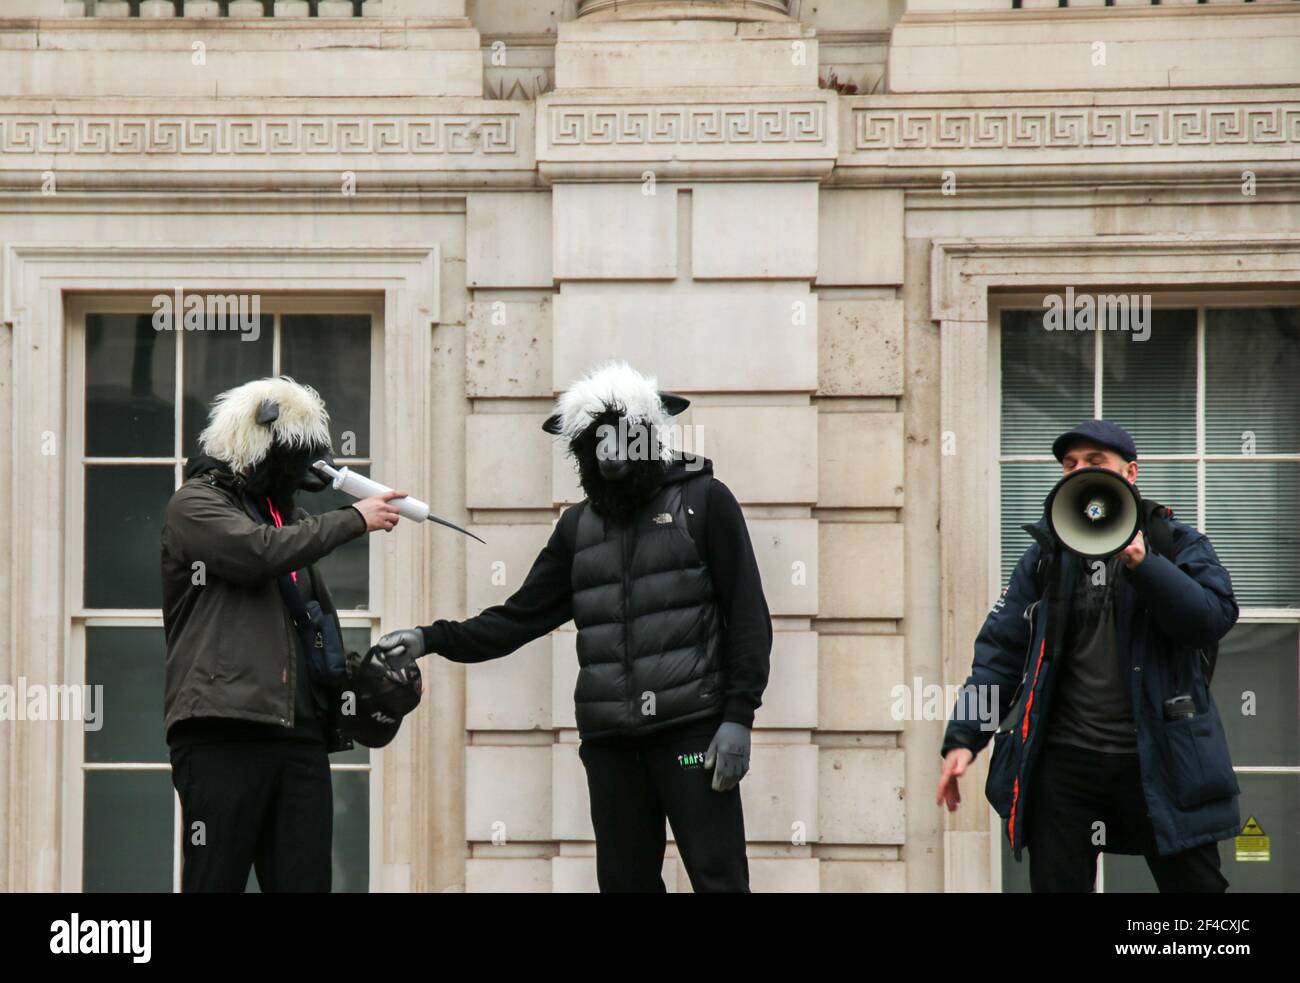 Londres Reino Unido 20 de marzo de 2021 dos manifestantes disfrazados de ovejas, se vacunaron entre sí, para decir: "Sed ovejas y obedecen al gobierno y vacunan". Paul Quezada-Neiman/Alamy Live News Foto de stock